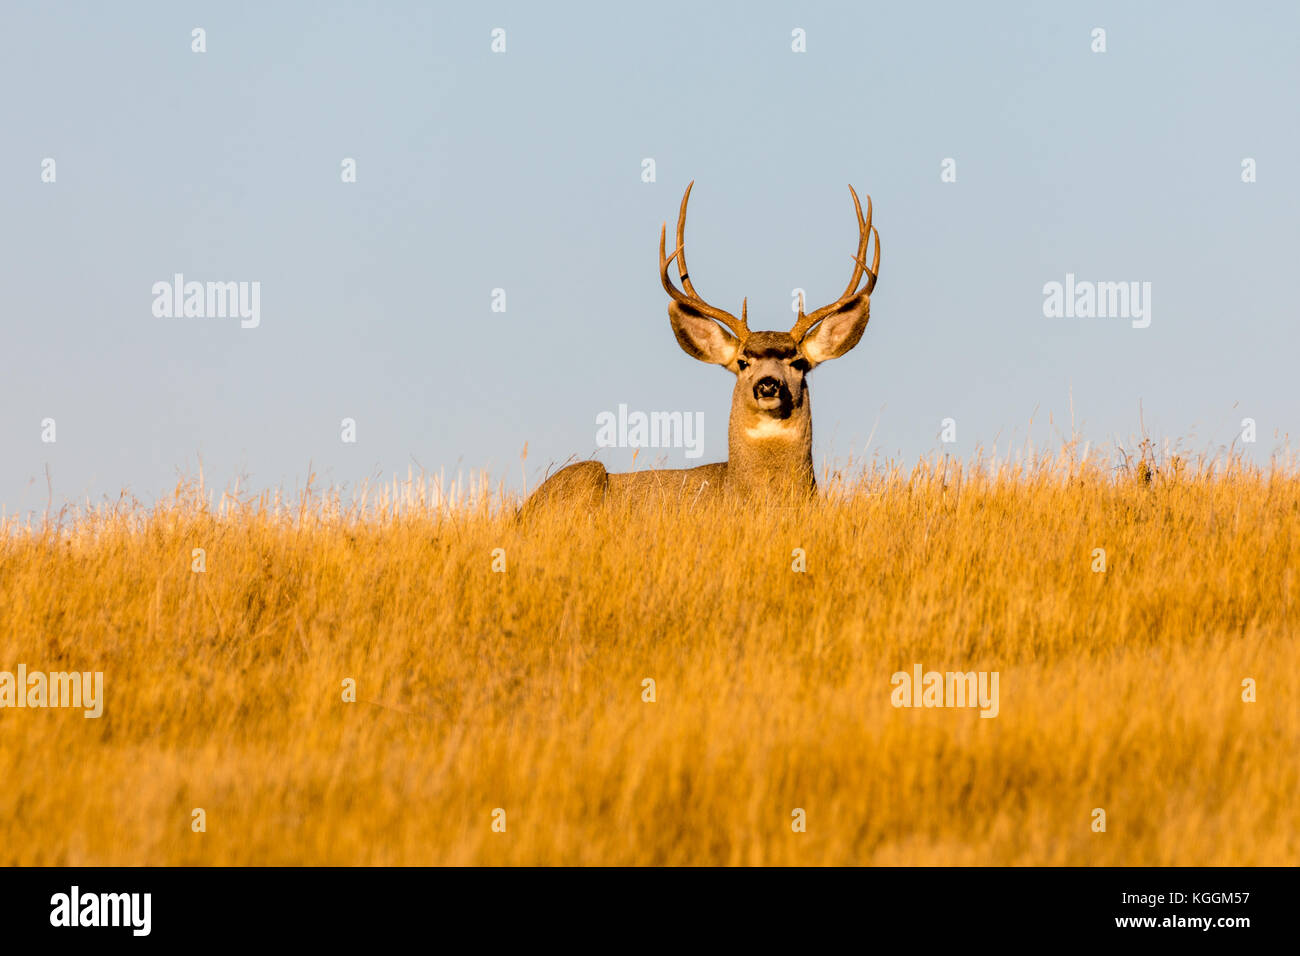 Mule deer (Odocoileus hemionus), Wall, South Dakota, USA Stock Photo